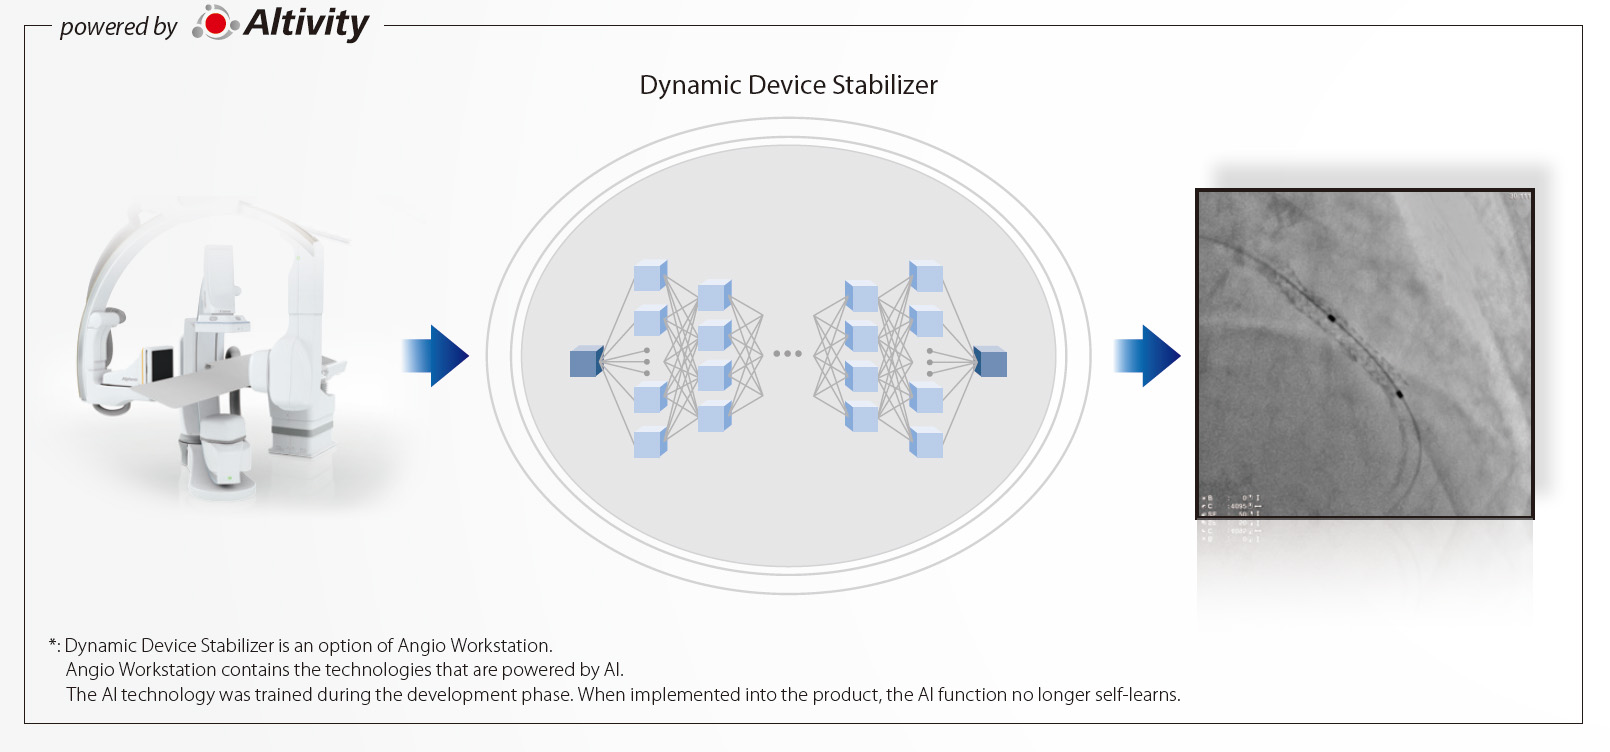 Dynamic Device Stabilizer